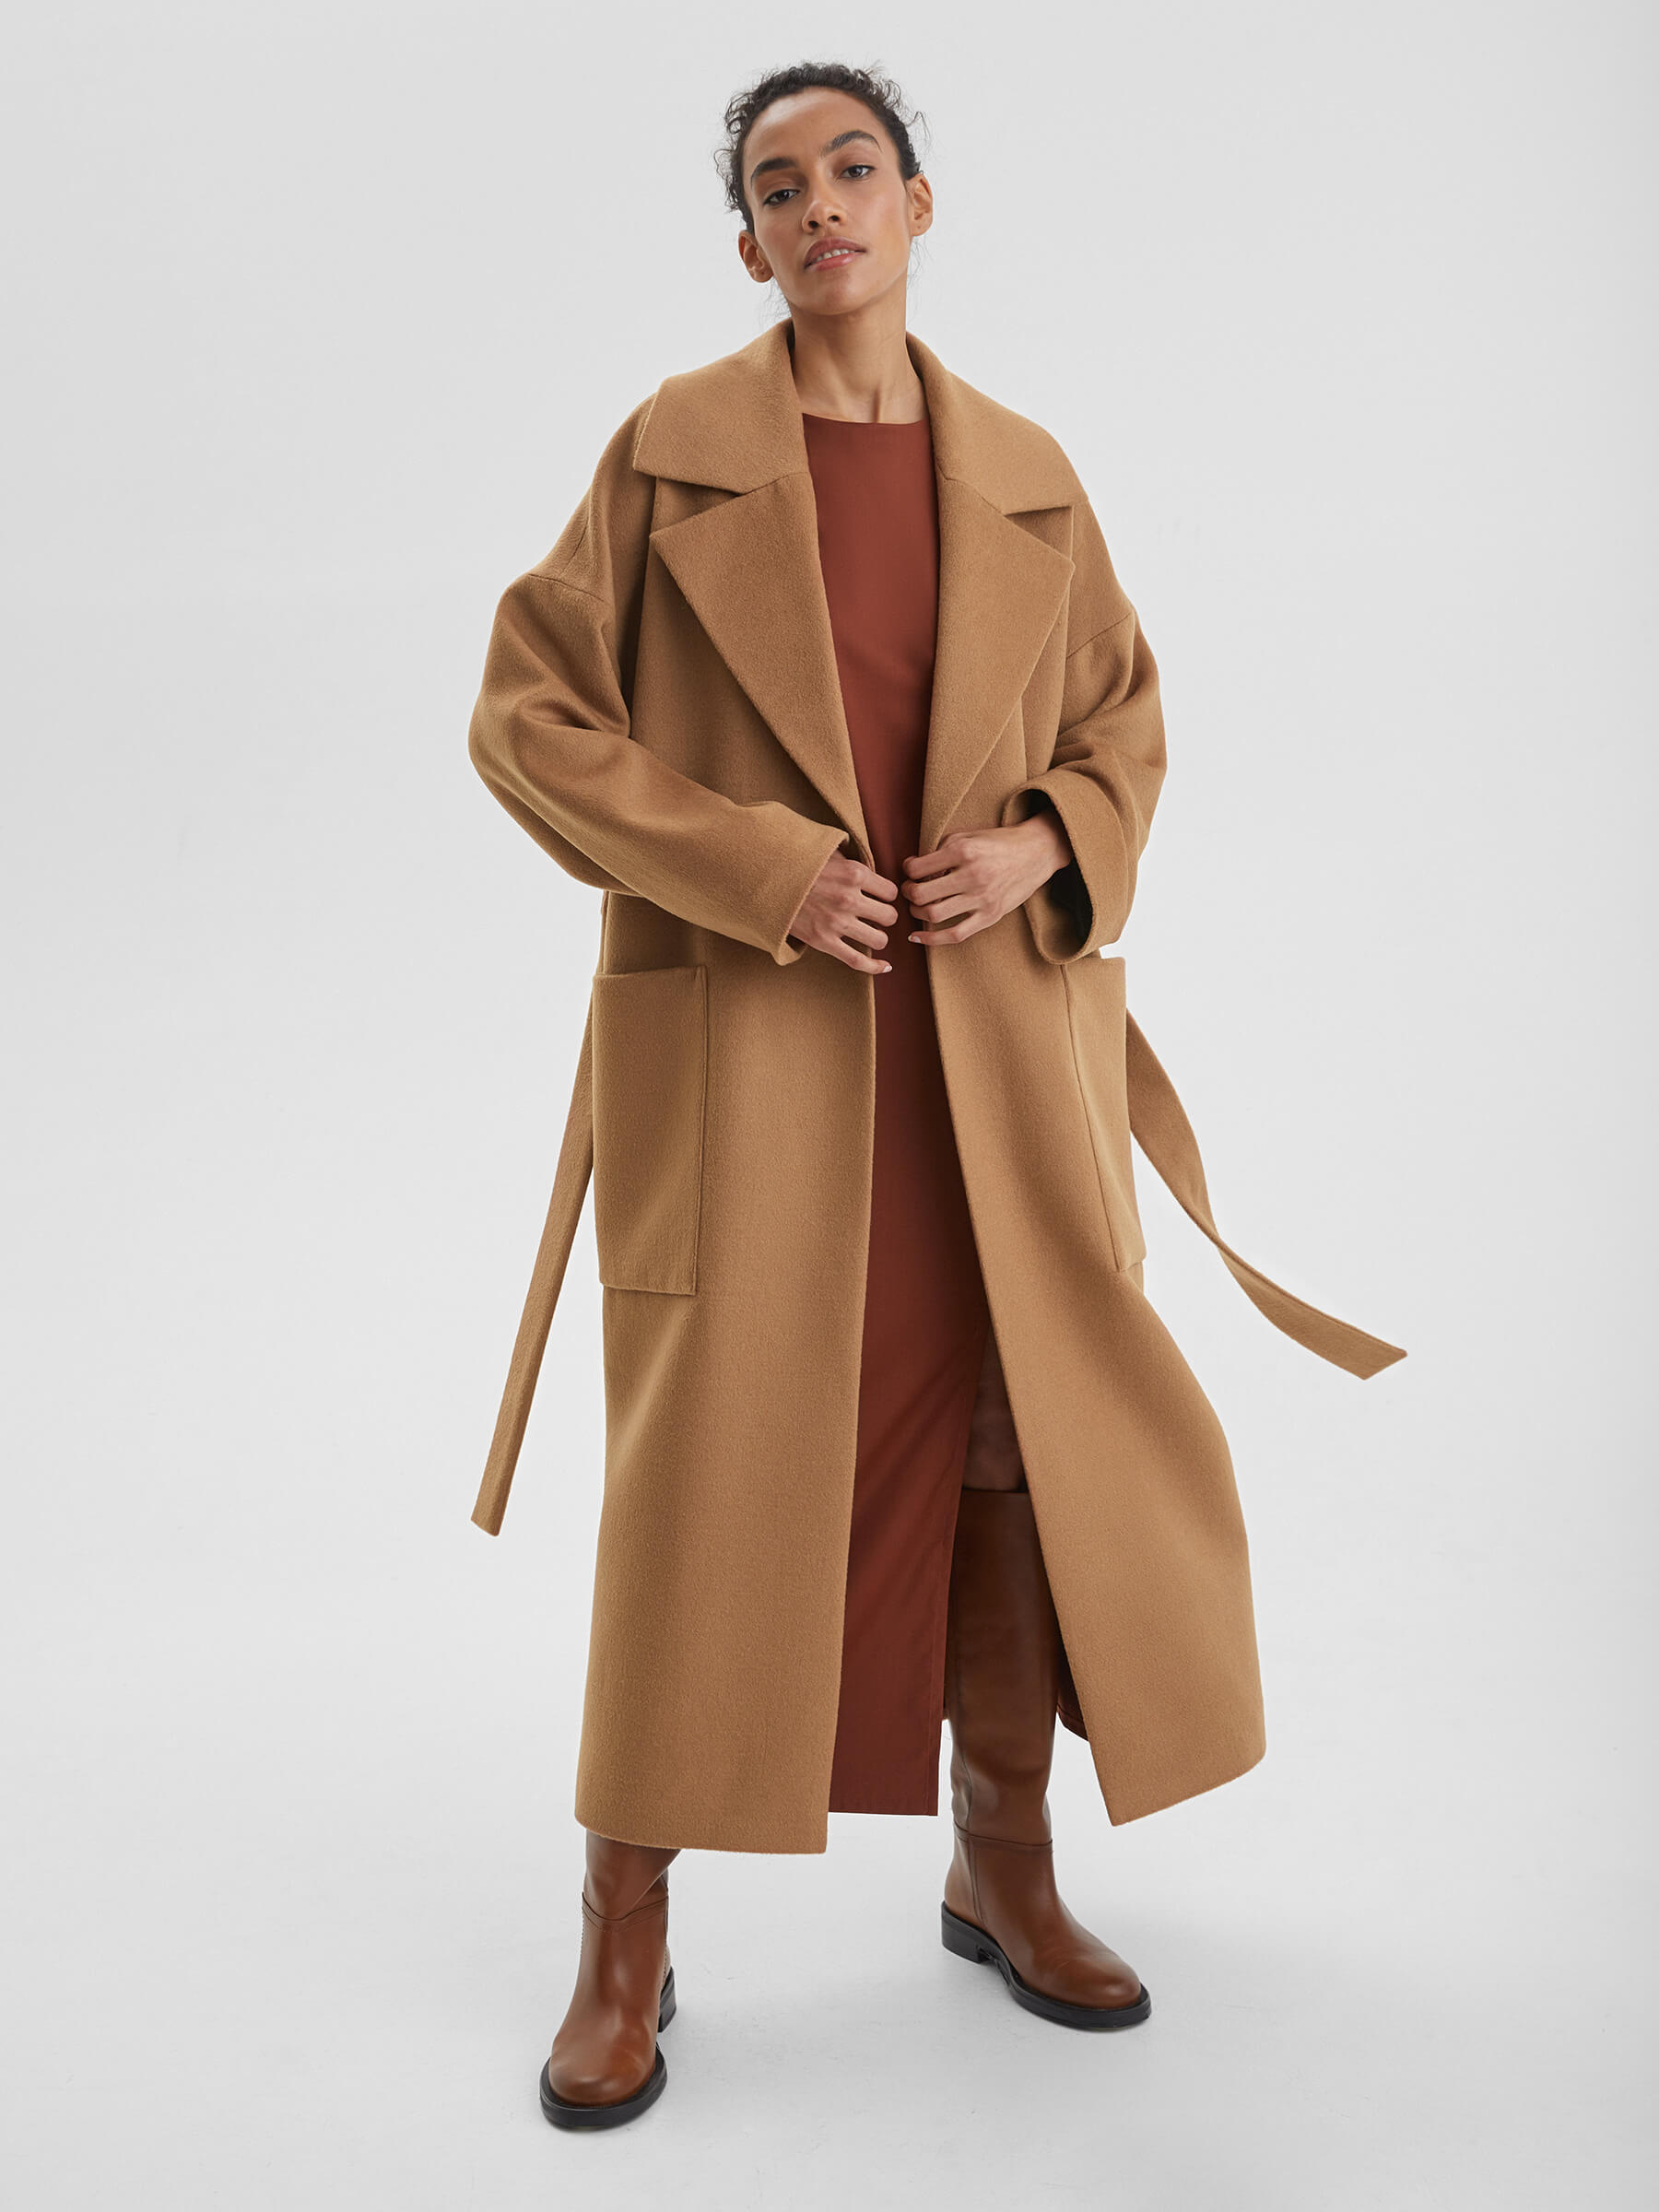 пальто женское длинное с объемными карманами и поясом цвет – молочный Пальто женское длинное с объемными карманами и поясом, цвет – кэмел